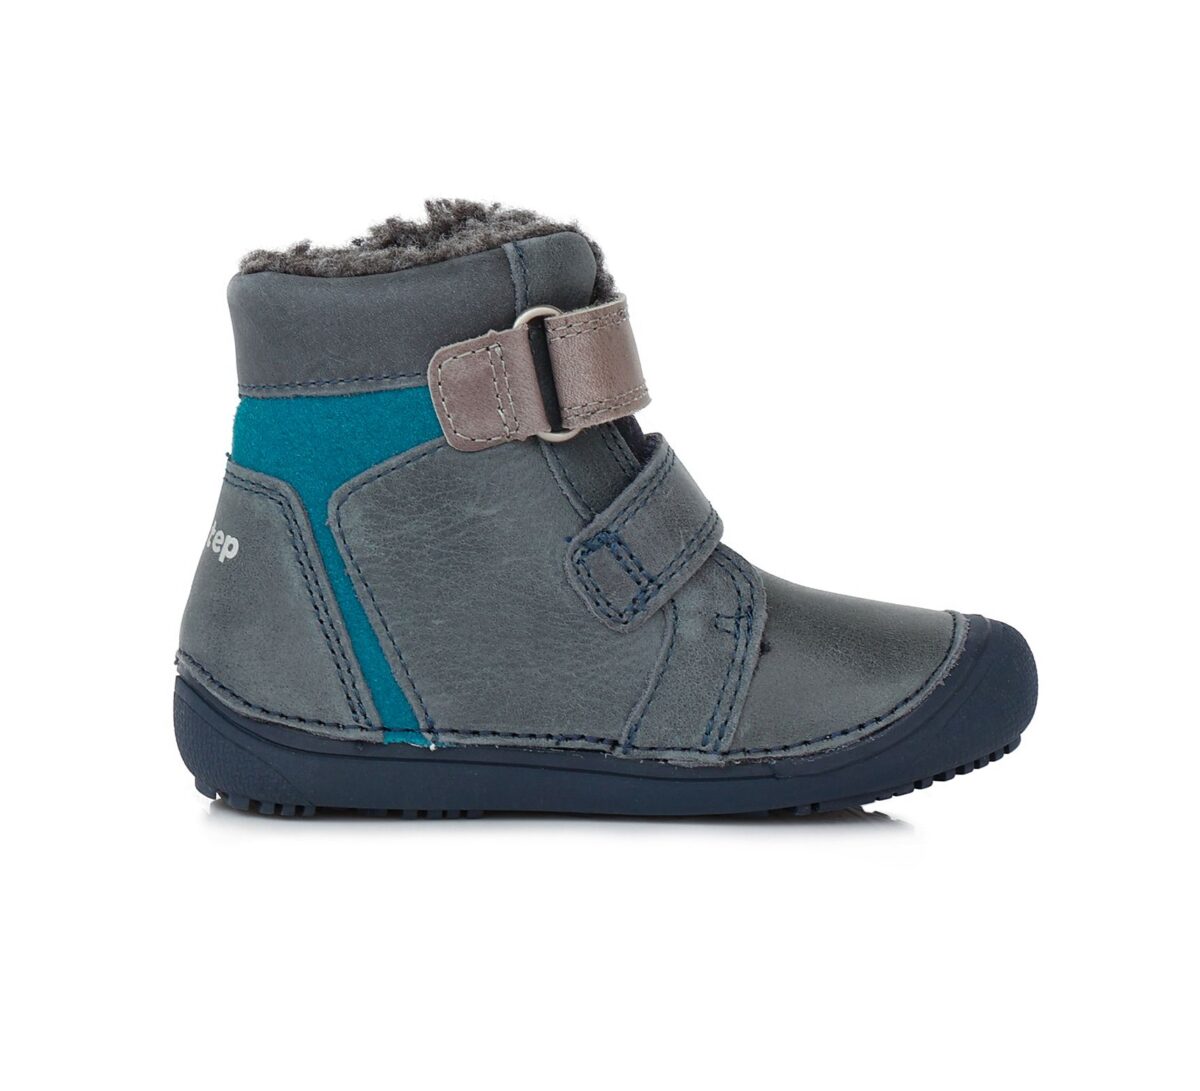 D.D.Step barefoot talvesaapad Royal Blue 063 D.D.Step - HellyK - Kvaliteetsed lasteriided, villariided, barefoot jalatsid